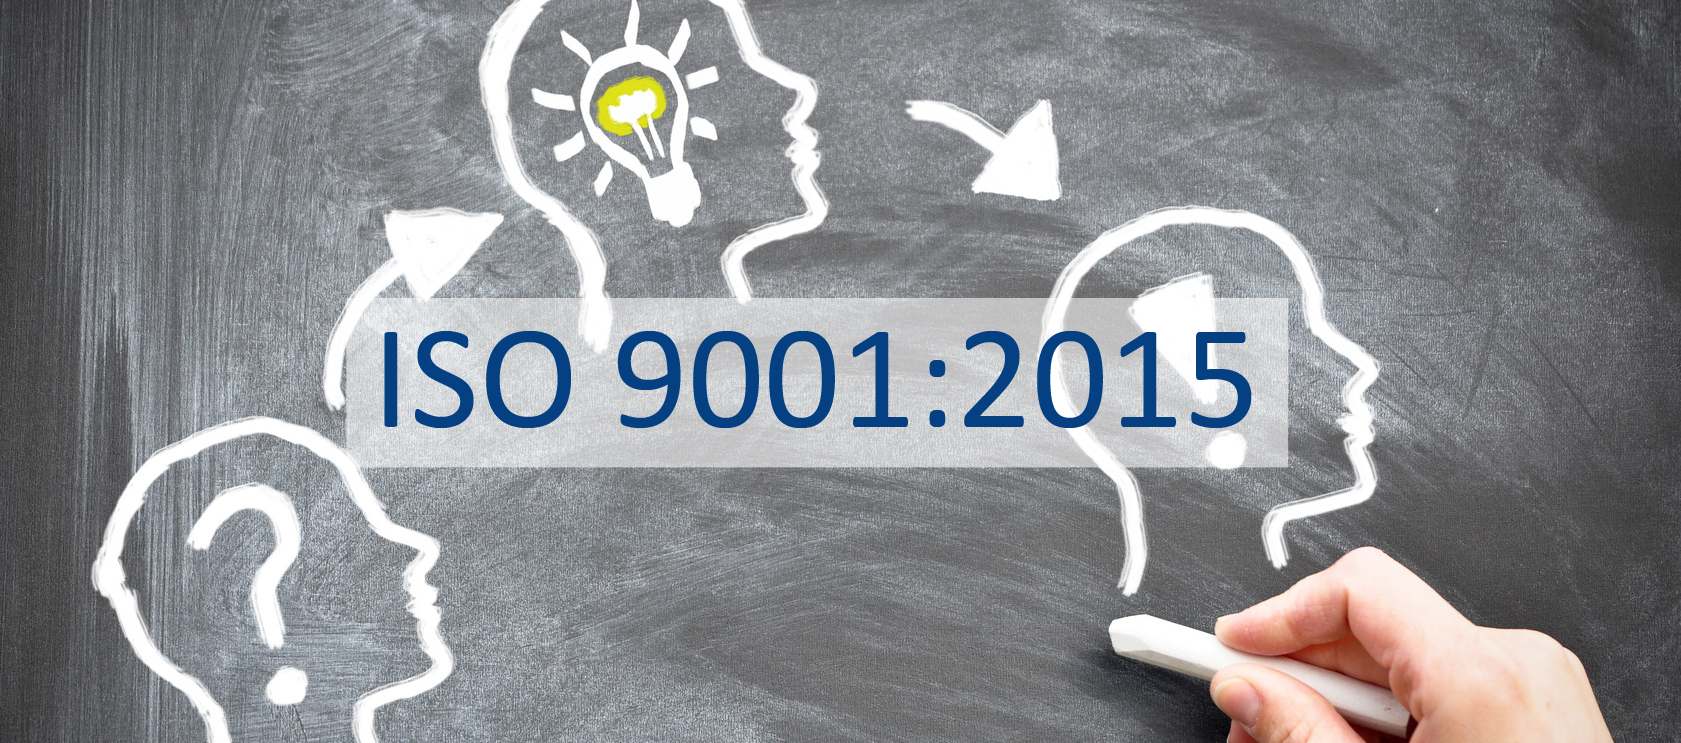 МЕЖДУНАРОДНЫЙ СТАНДАРТ ISO 9001:2015